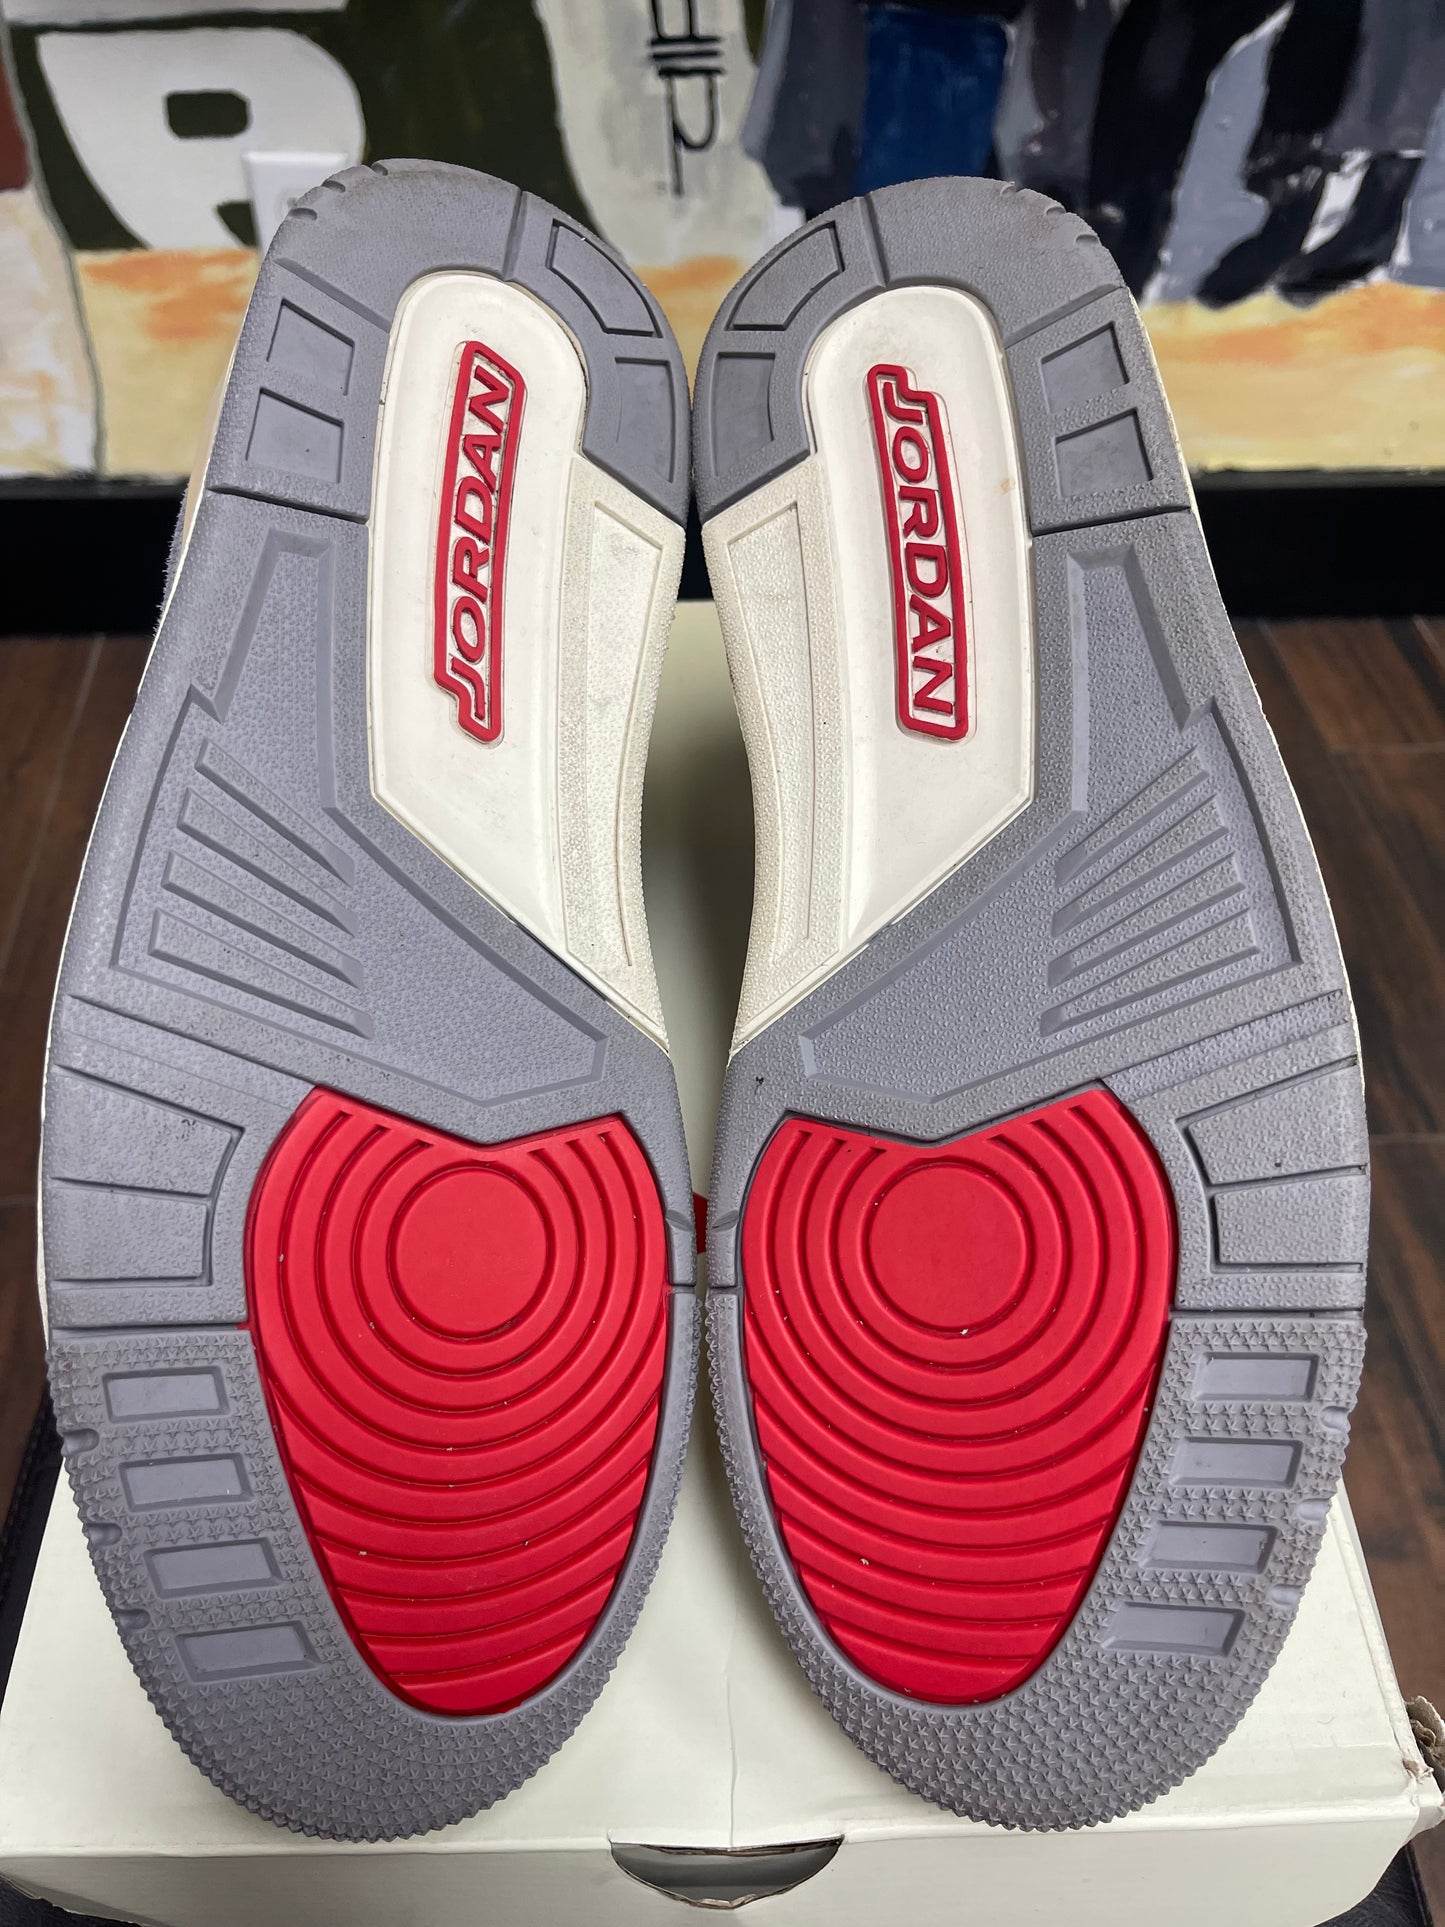 Air Jordan Retro 3 ‘ Muslin ‘ Size 10.5